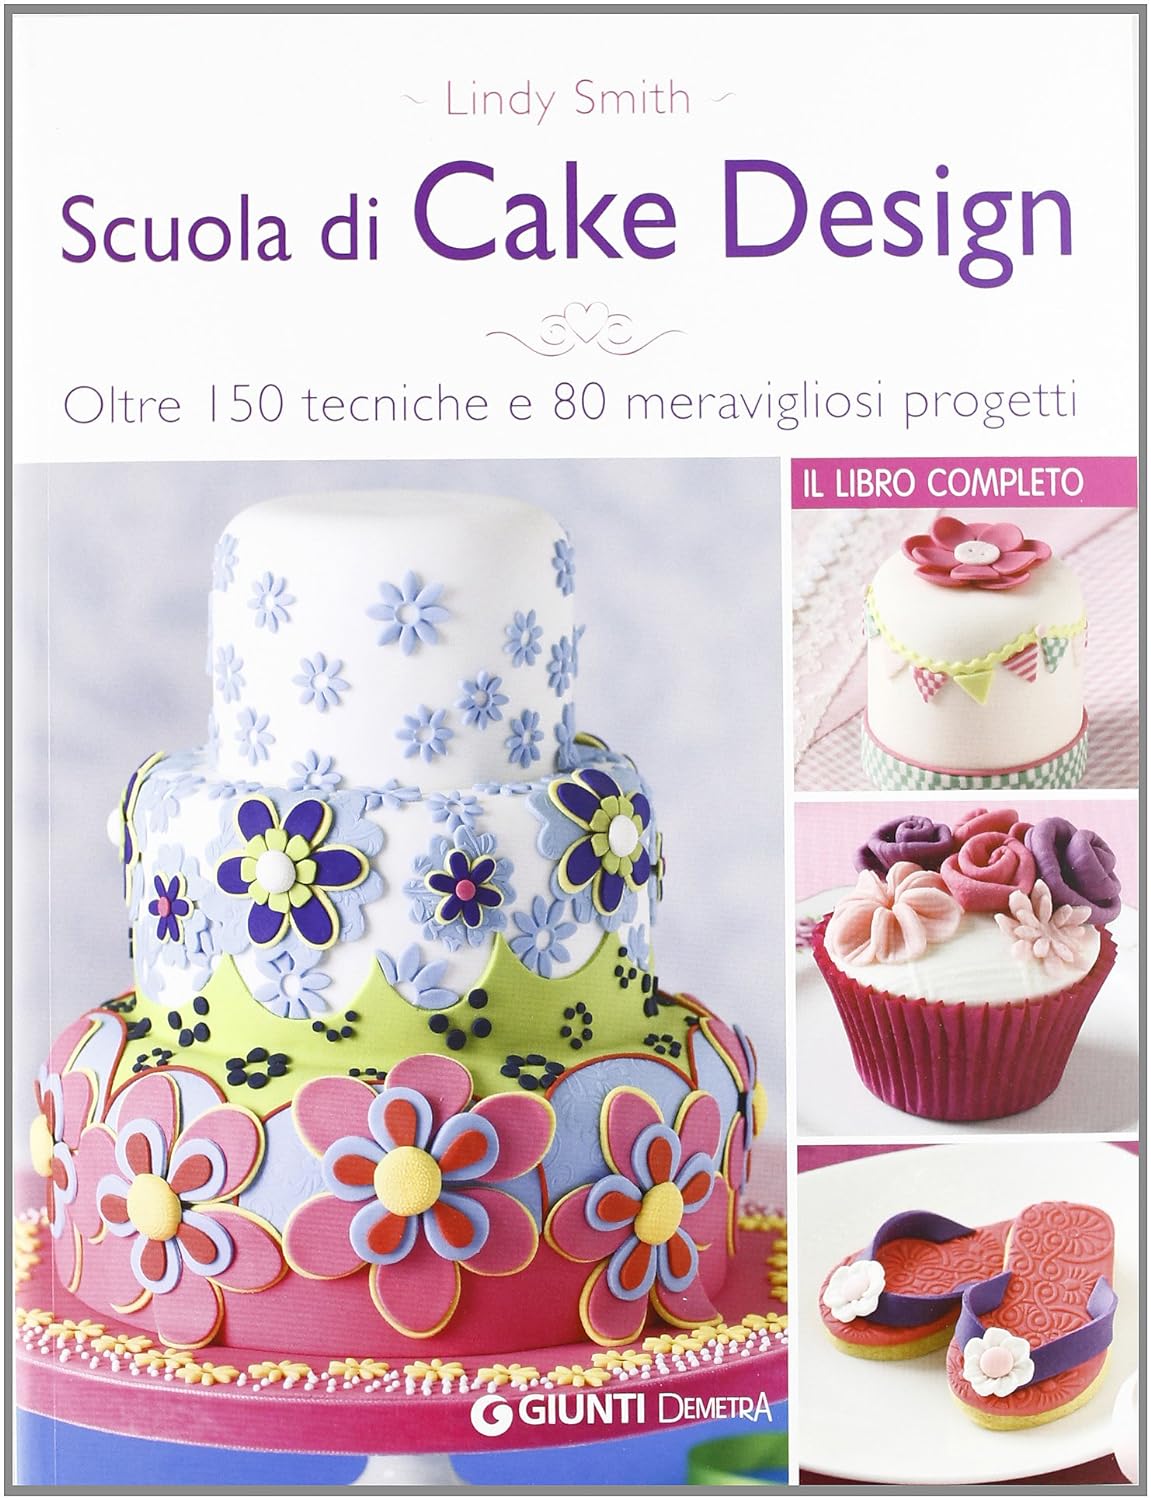 Scuola di Cake Design book by Lindy Smith